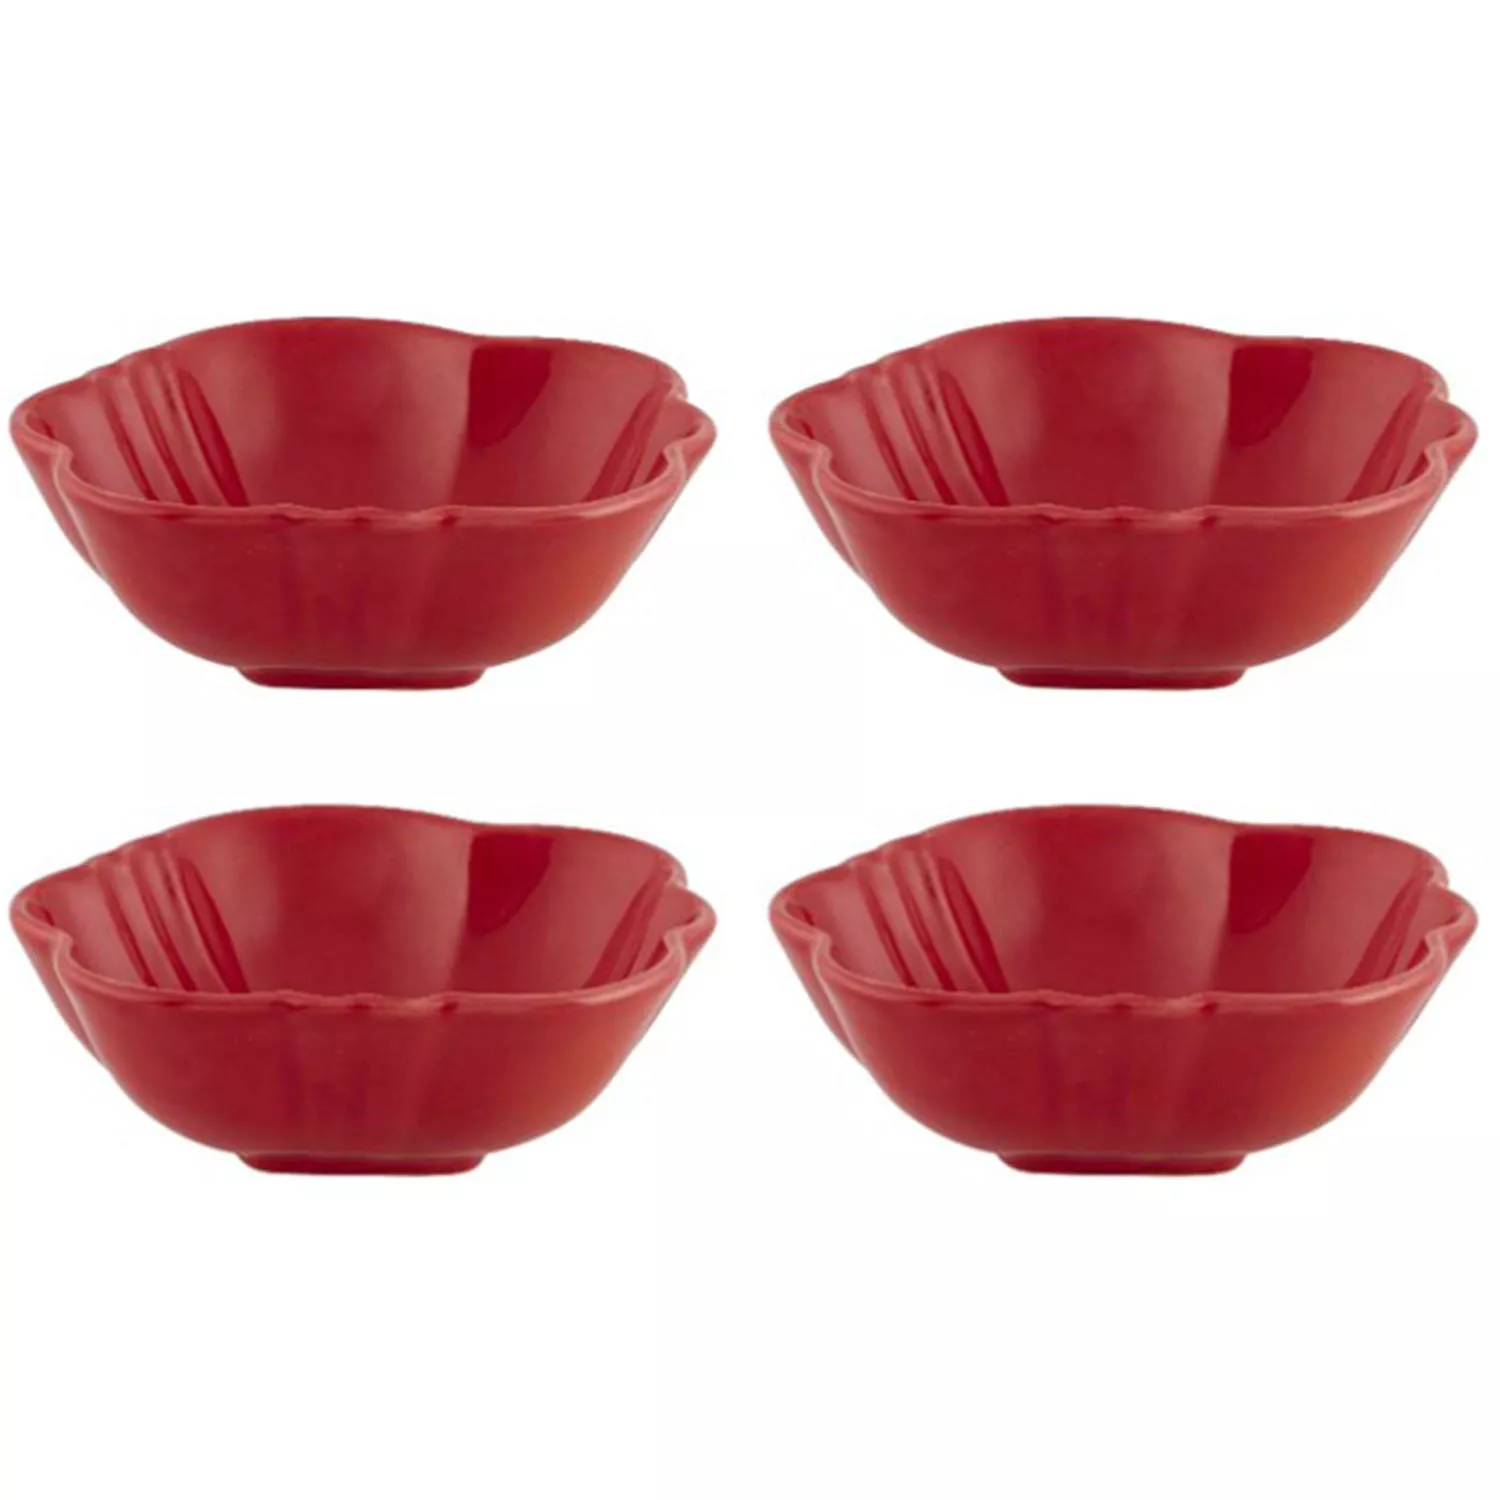 Bordallo Pinheiro Tomato Bowls, Set of 4